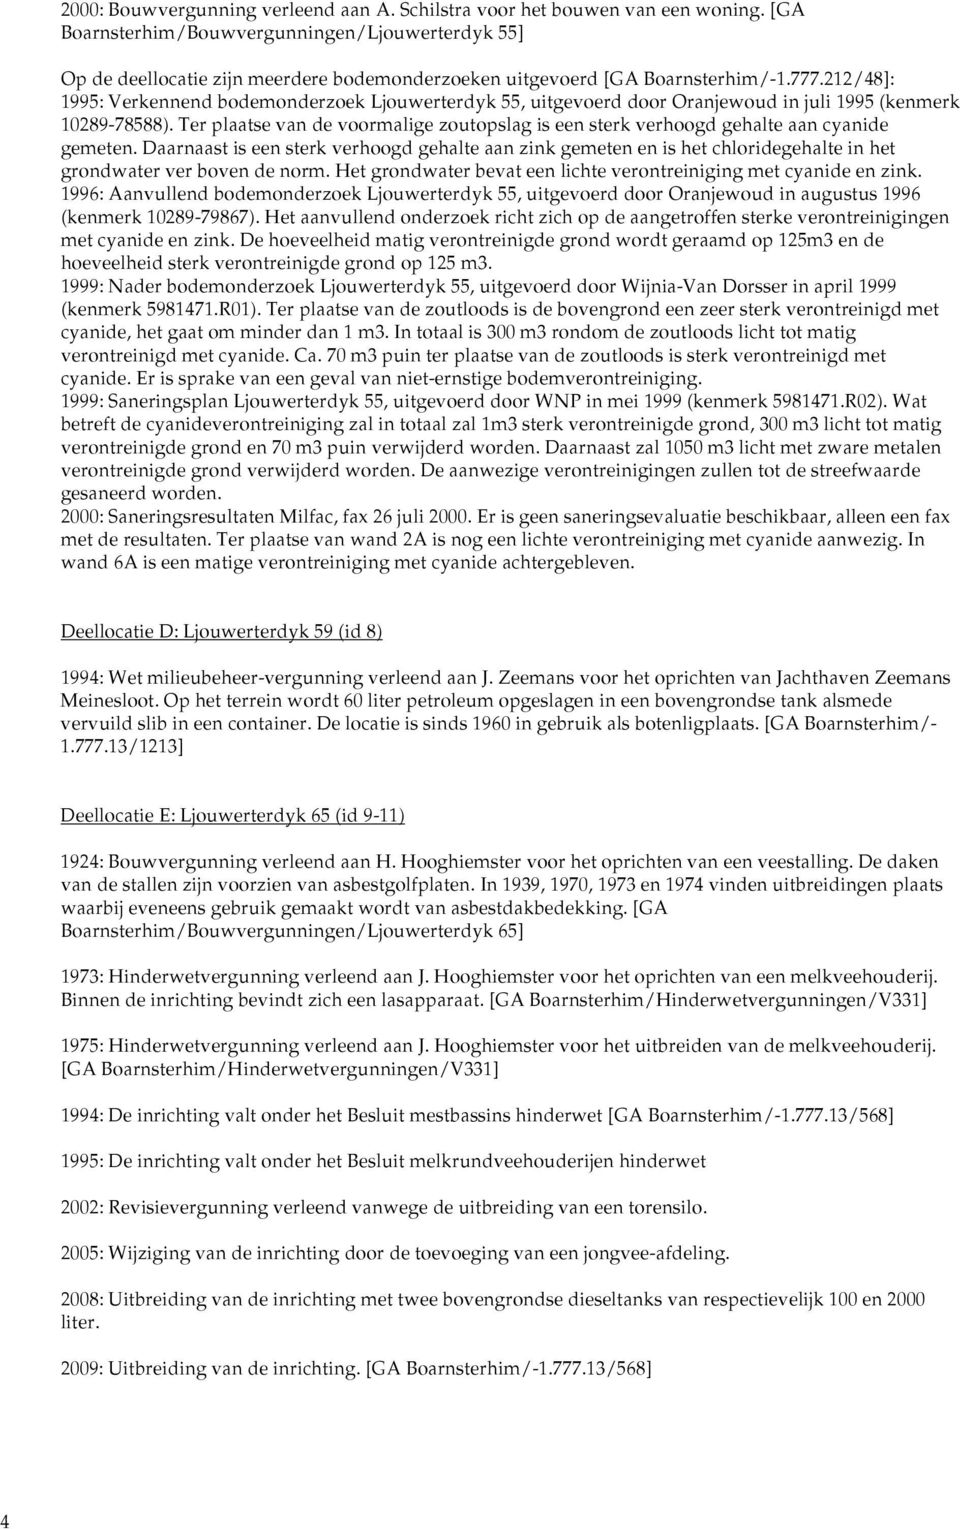 212/48]: 1995: Verkennend bodemonderzoek Ljouwerterdyk 55, uitgevoerd door Oranjewoud in juli 1995 (kenmerk 10289-78588).